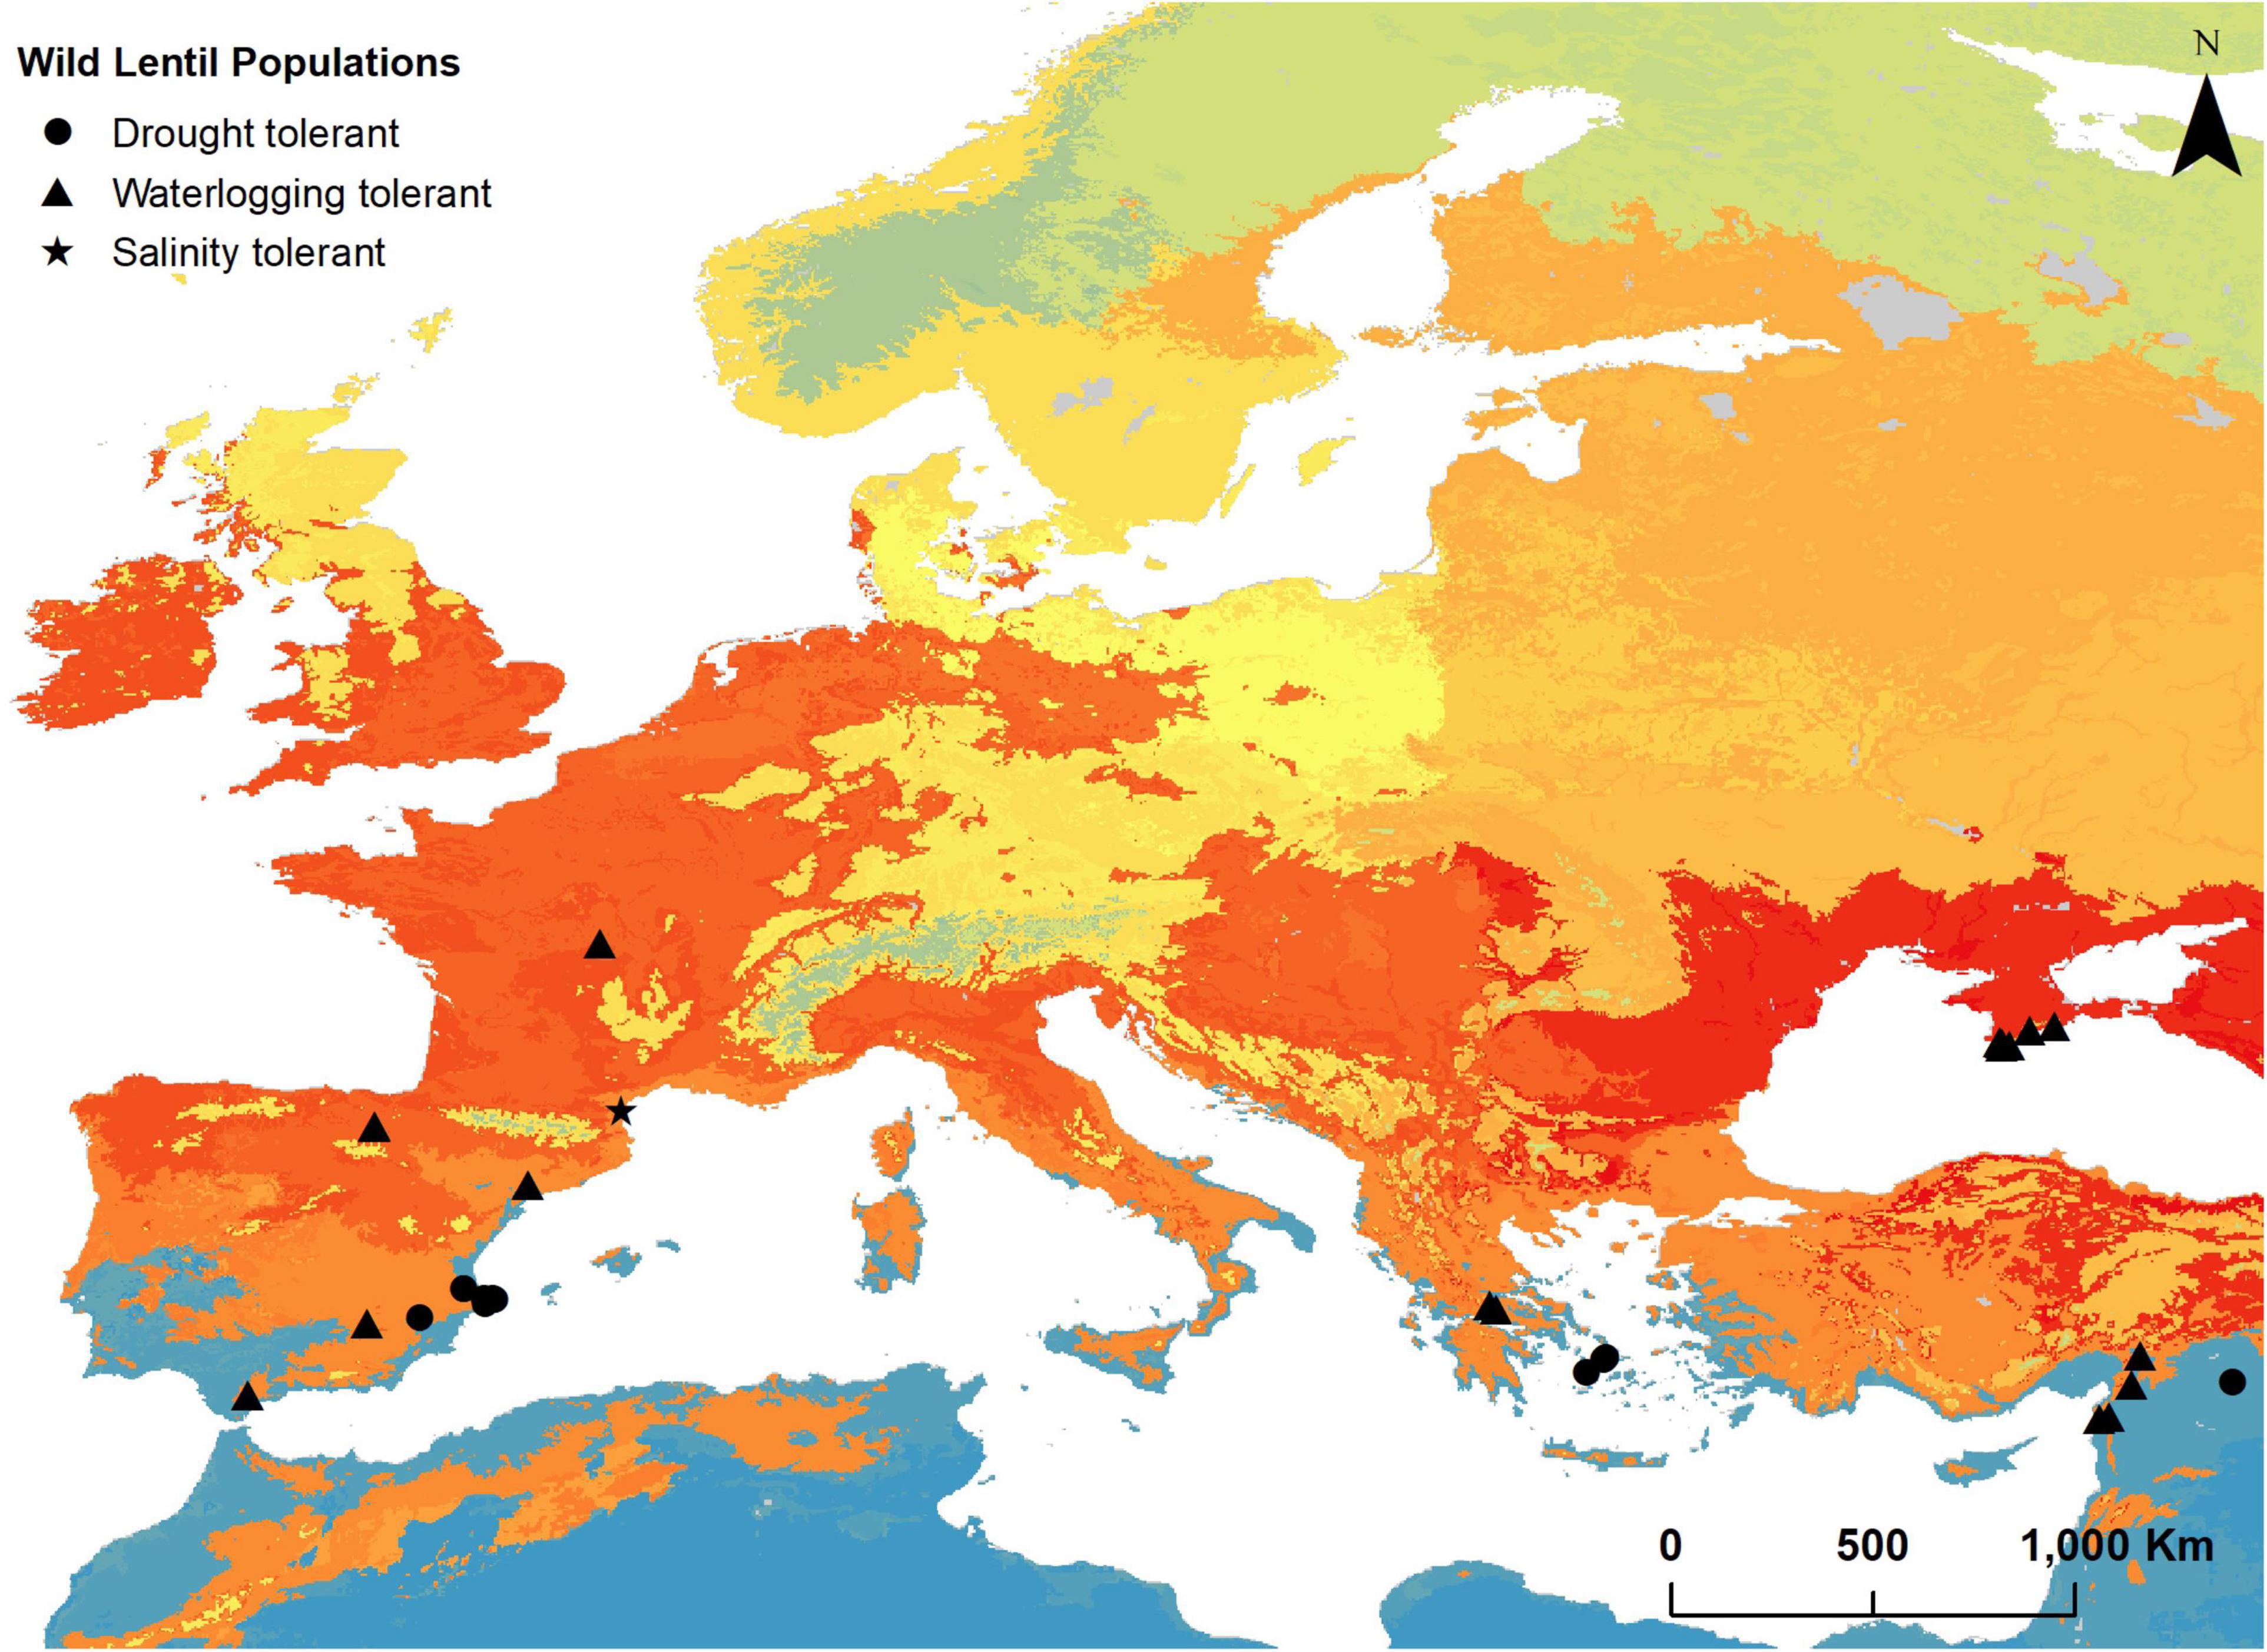 geothermal energy map europe